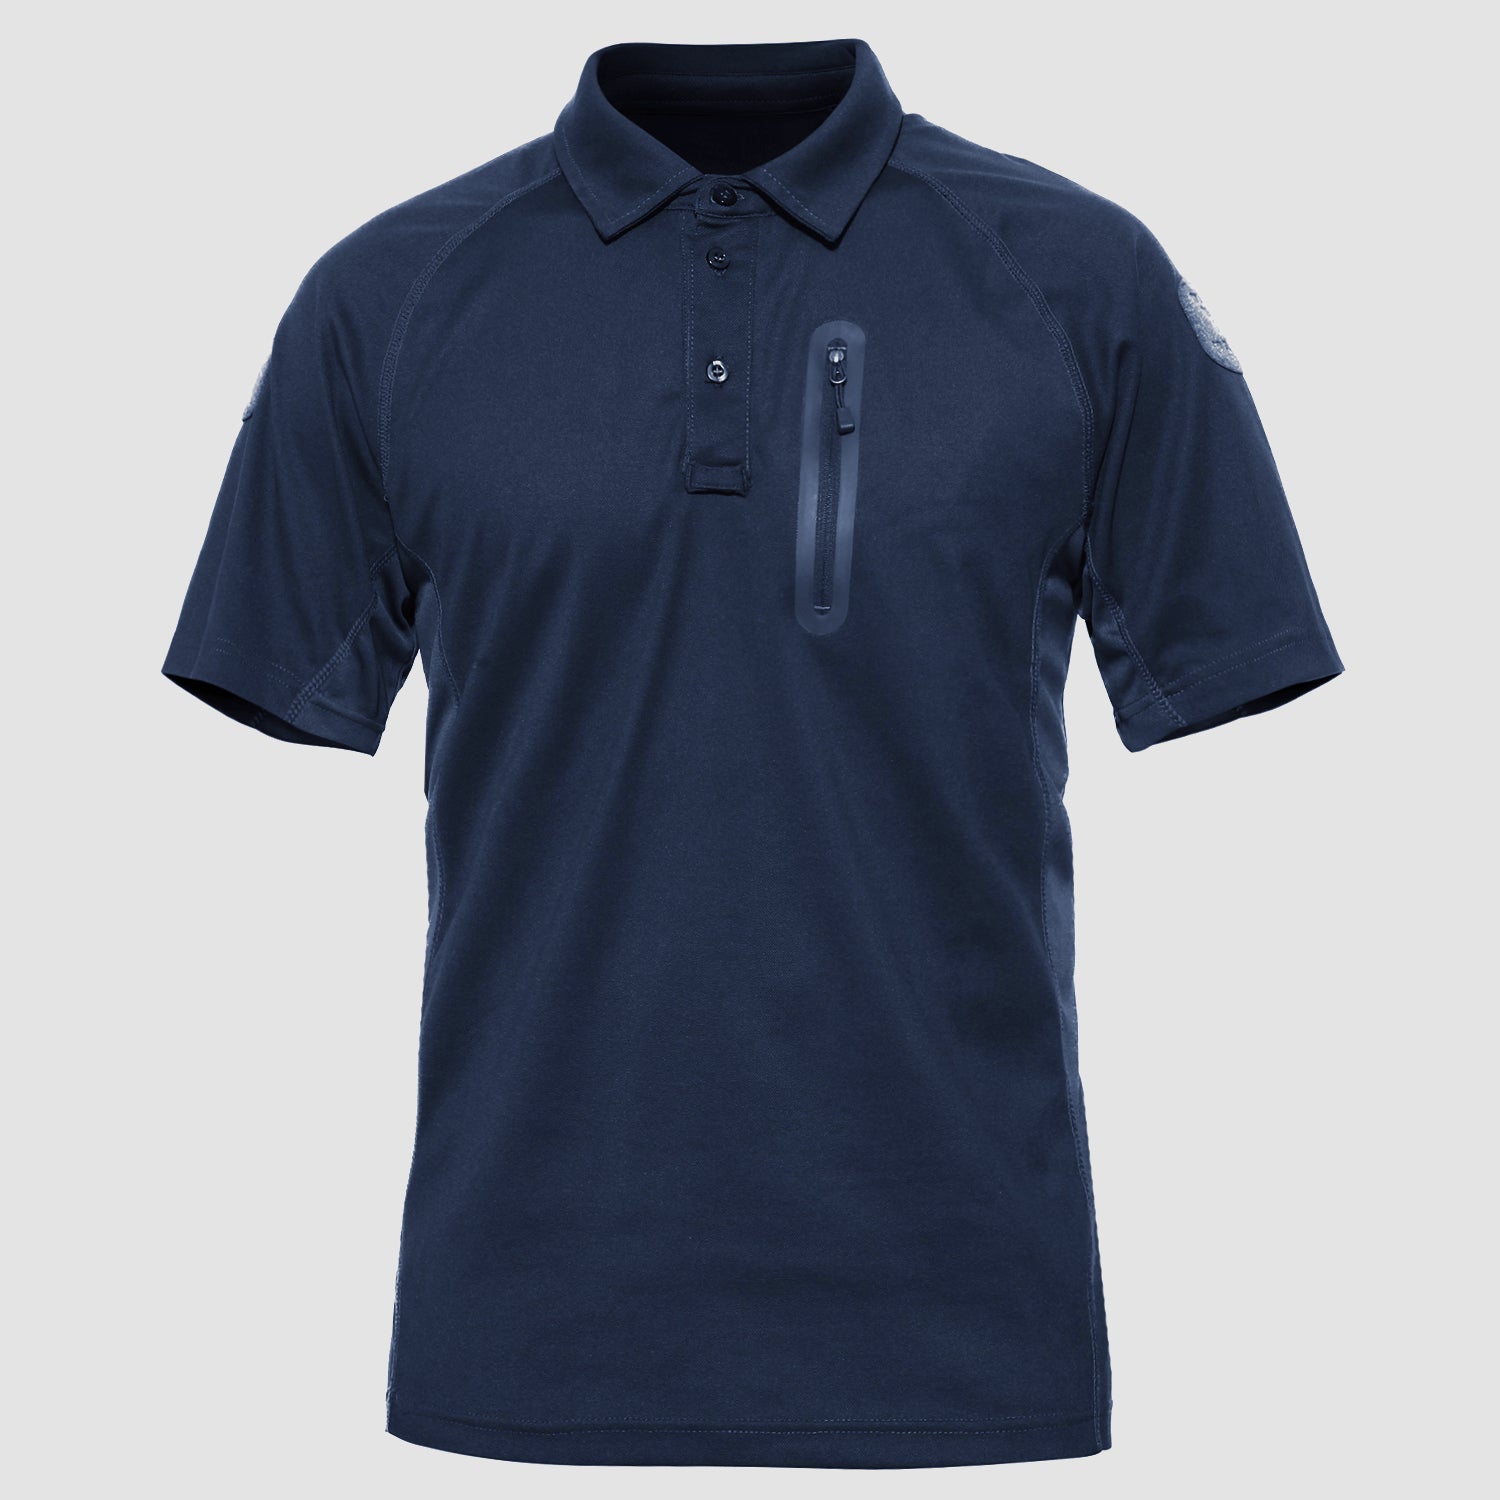 Radyan Mens Polo T-shirts - Half Sleeve Tshirts for Men - Mens Tshirts 